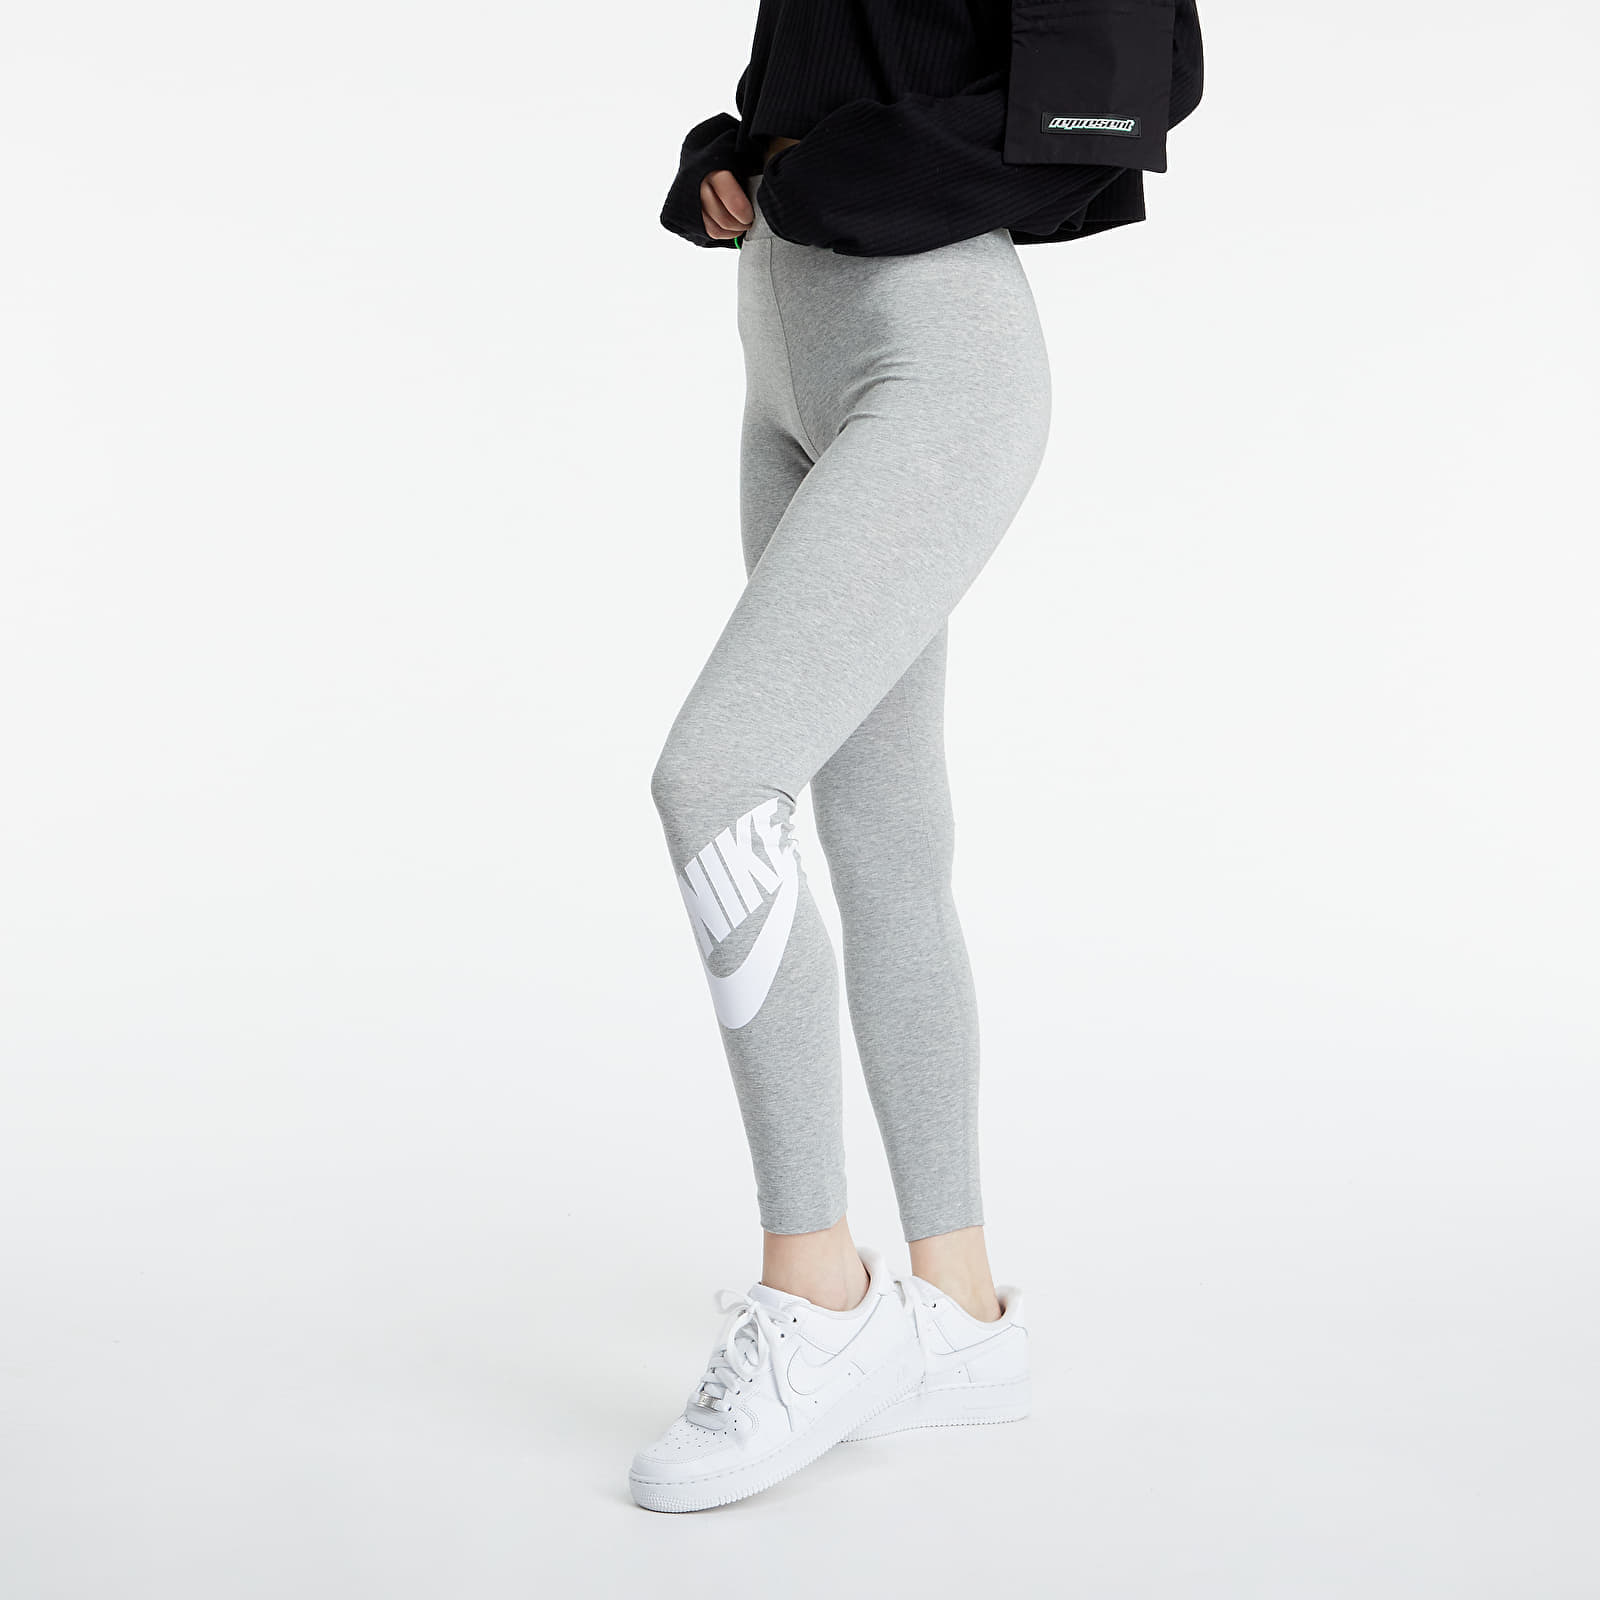 Leggings Nike Women's High-Waisted Logo Leggings Dk Grey Heather